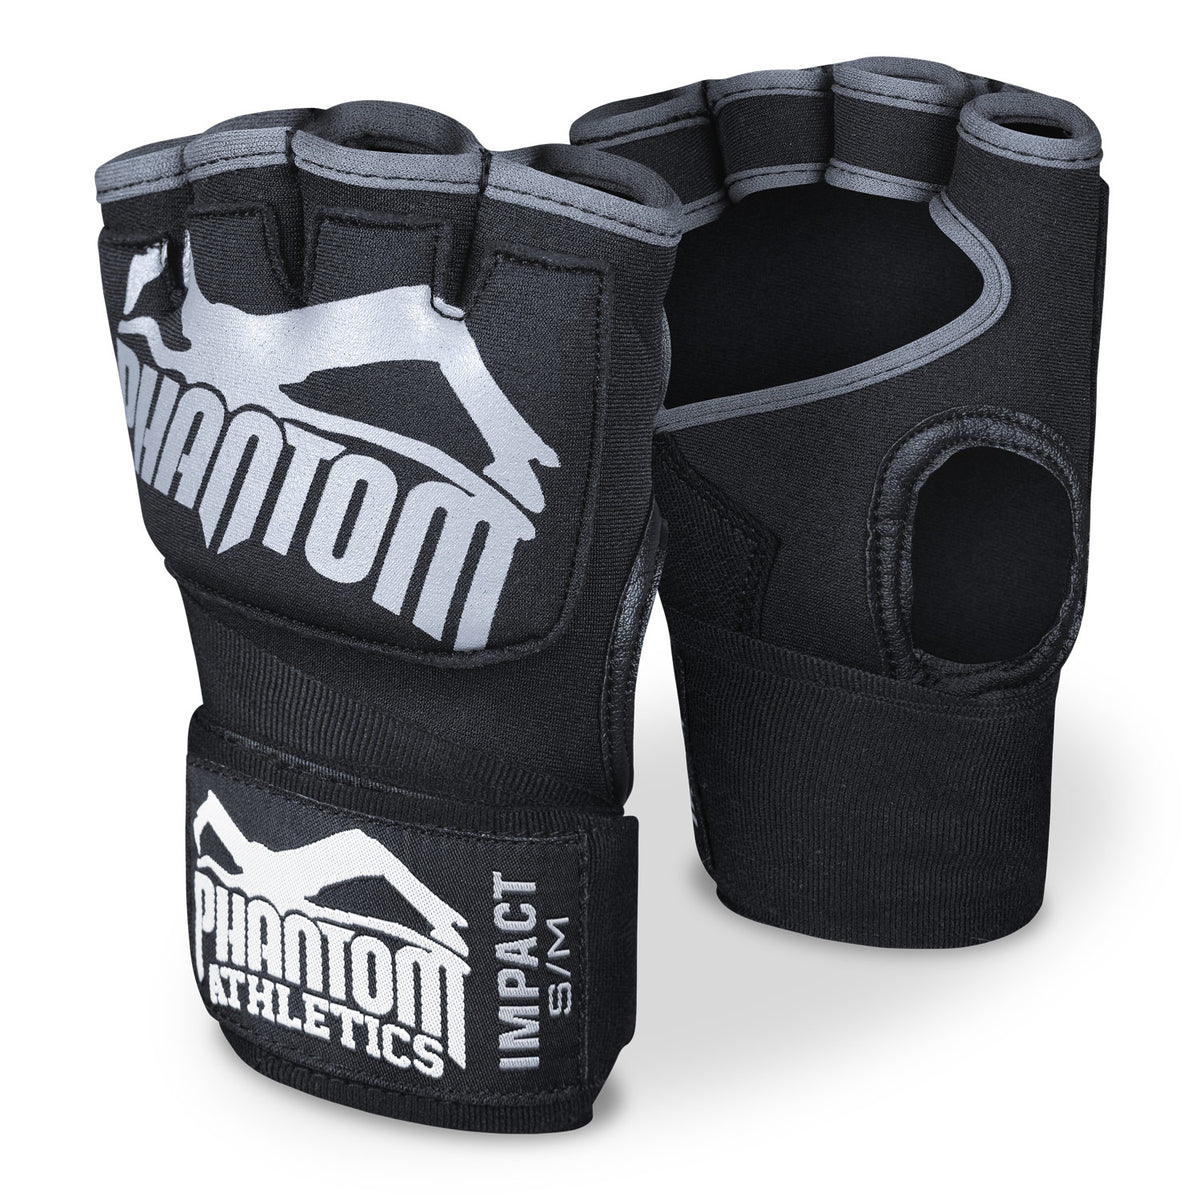 Bandaje de box Phantom Impact cu umplutură cu gel. Pentru mai multă protecție în antrenamentul de arte marțiale.